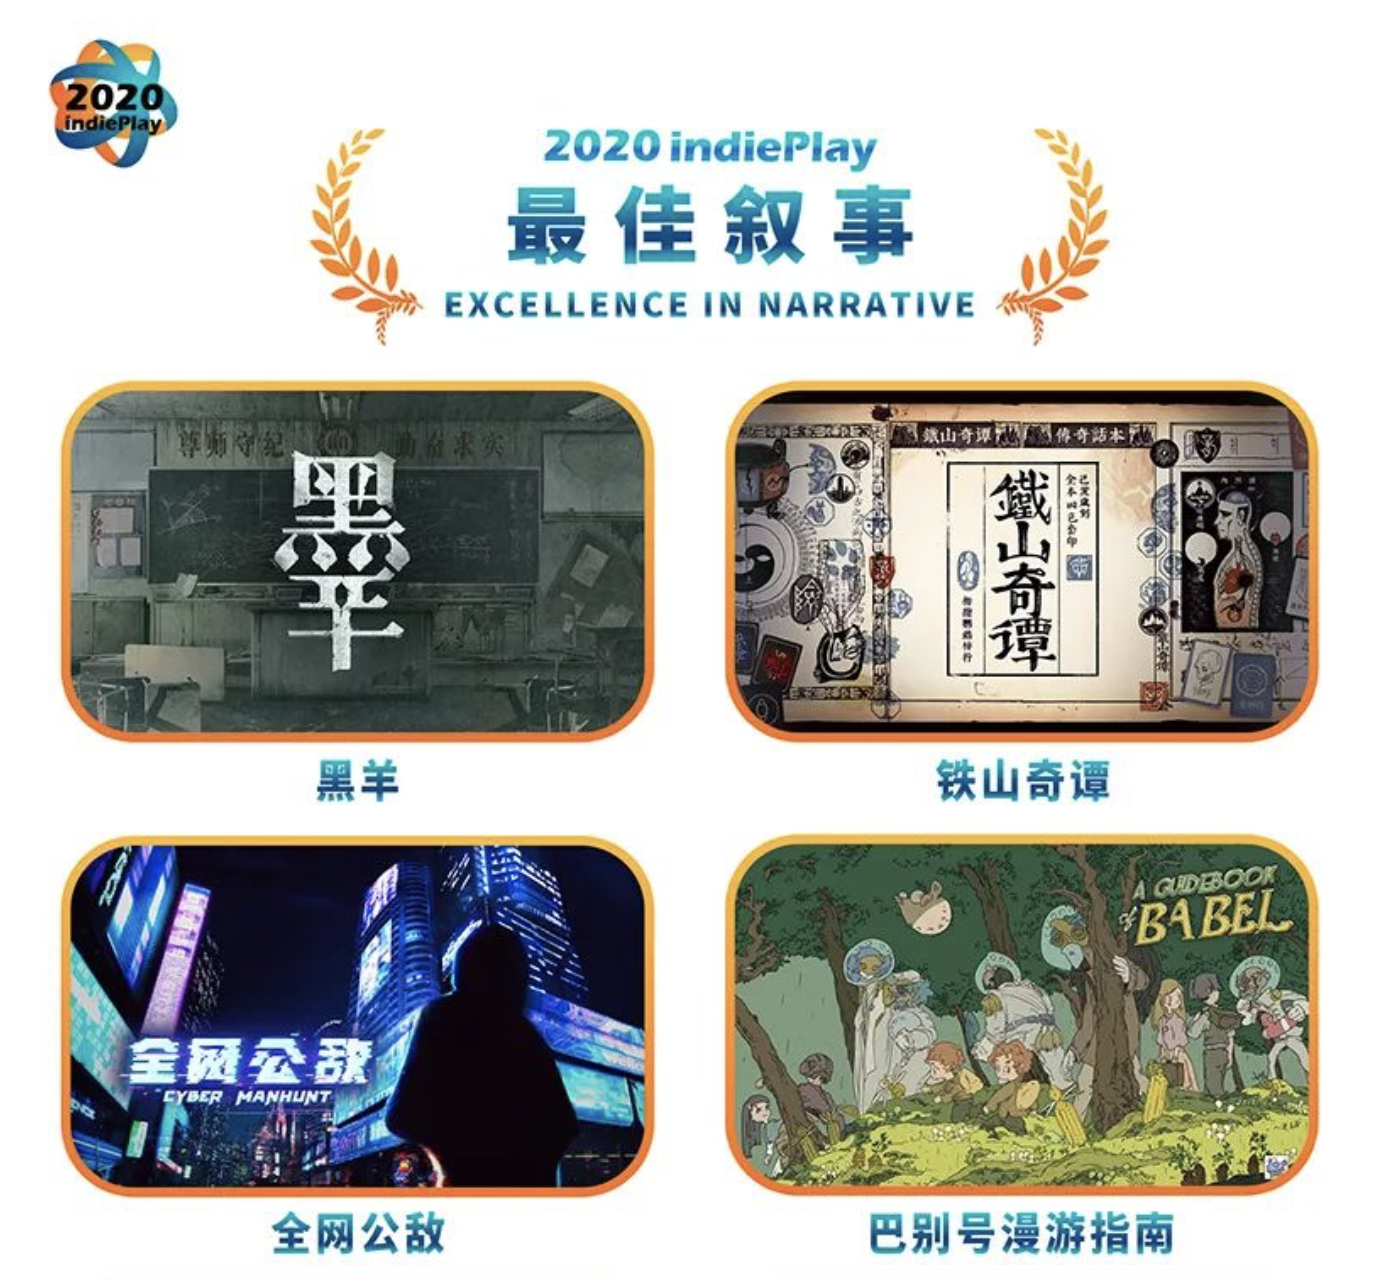 《全网公敌》入围indiePlay中国独立游戏大赛“最佳设计”和“最佳叙事”奖